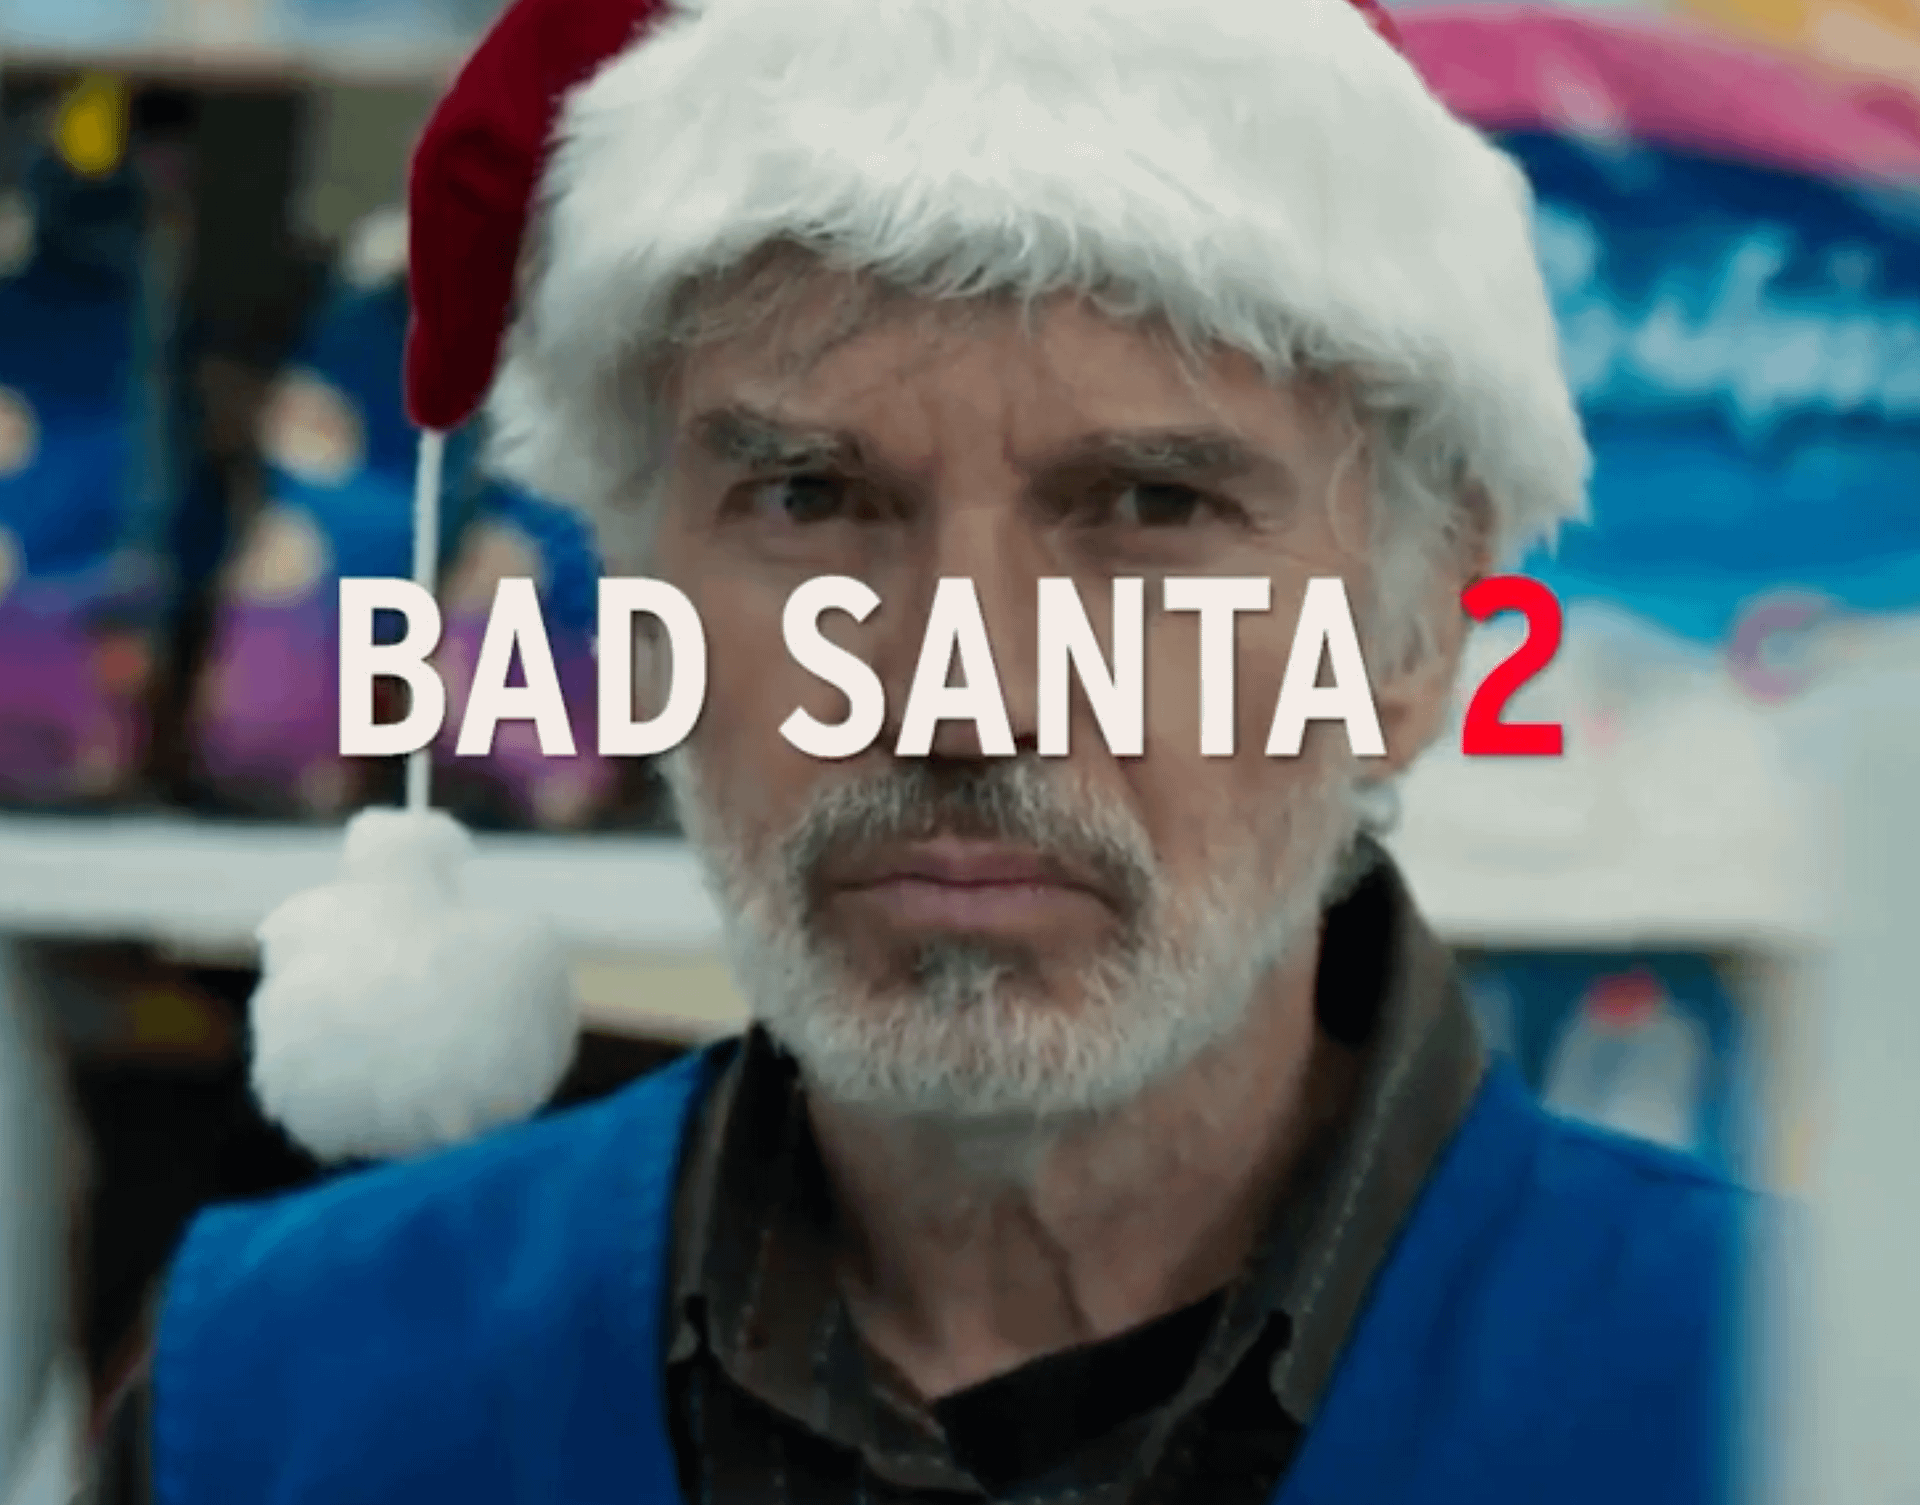 Bad Santa 2: Créditos finales de la película.